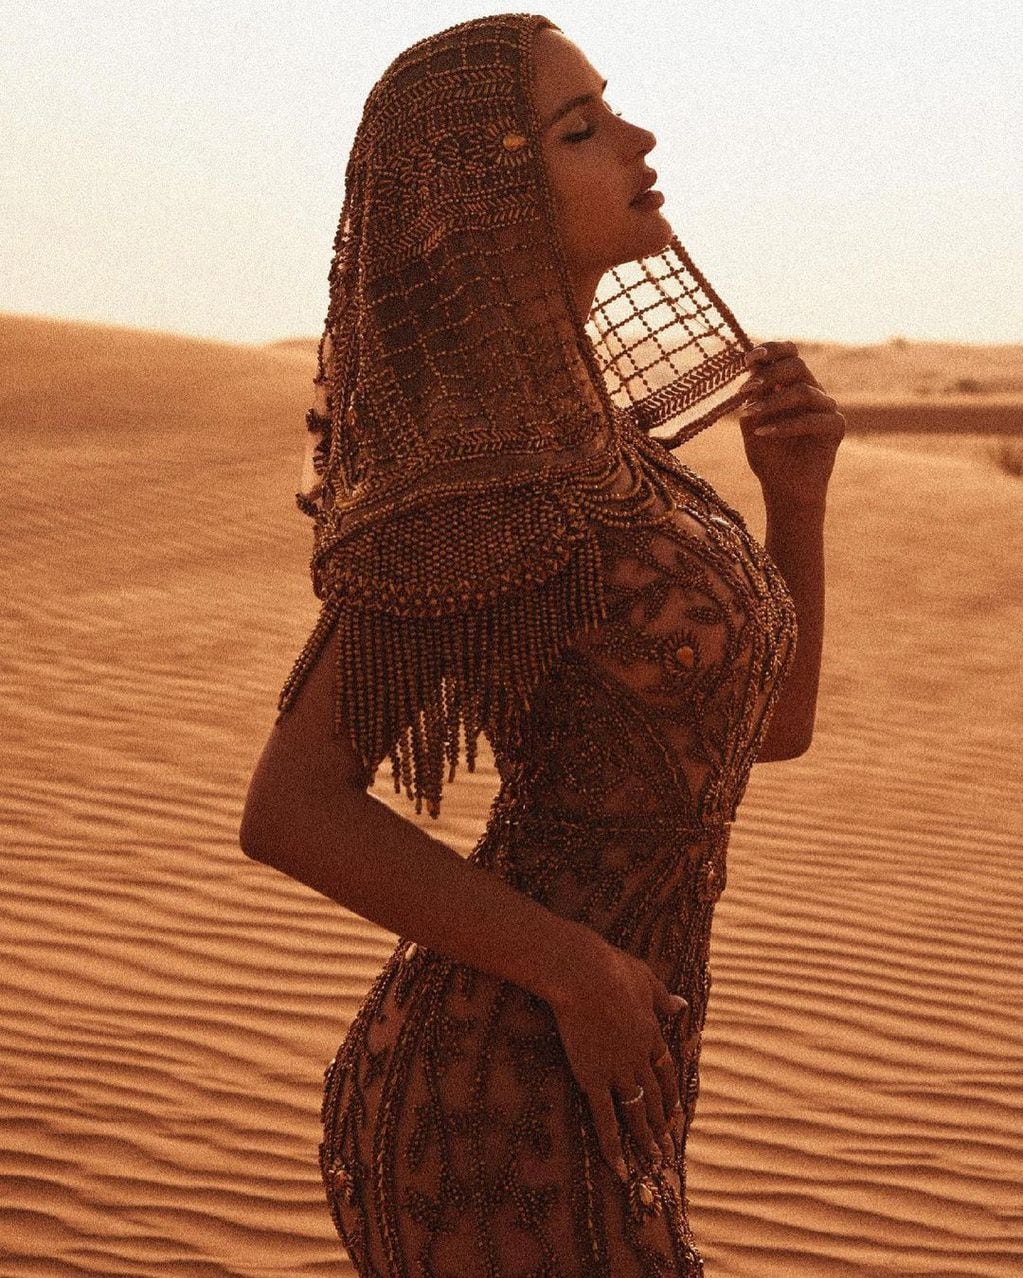 Natalia Barulich, la ex de Maluma, posó con un exótico vestido de transparencias al estilo Cleopatra